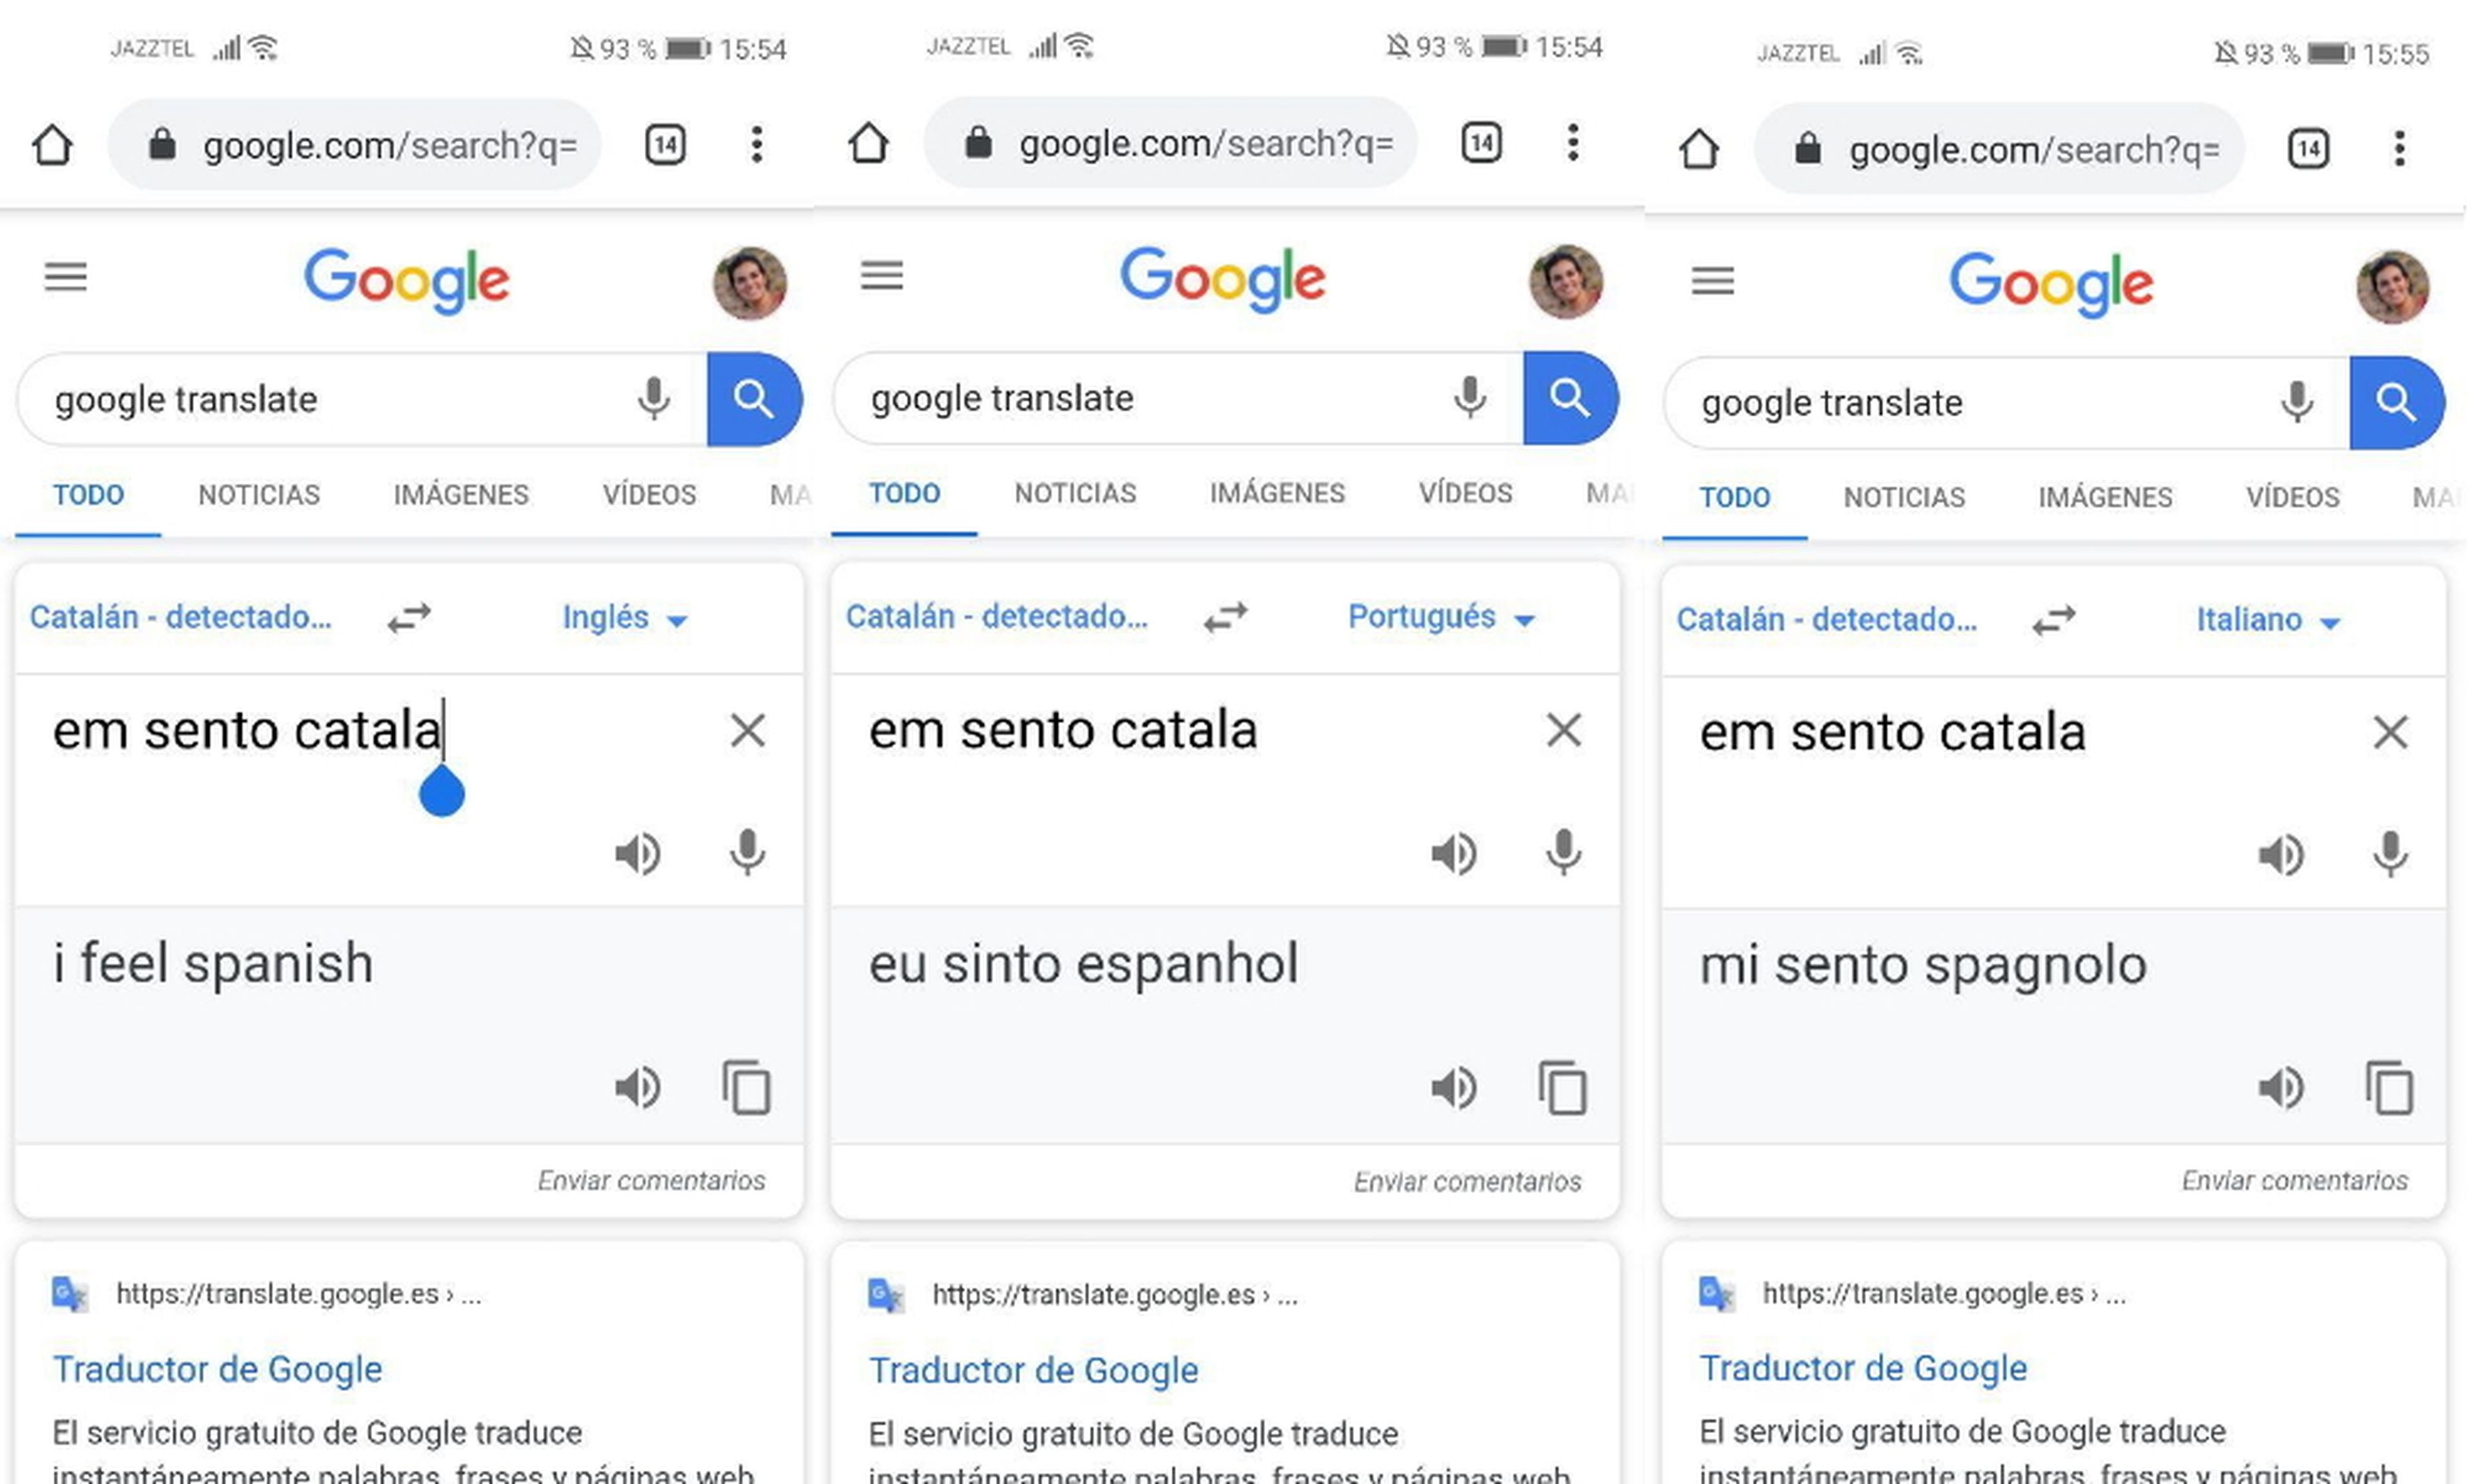 La controvertida respuesta del traductor de Google: traduce «em sento català»  por «me siento español»